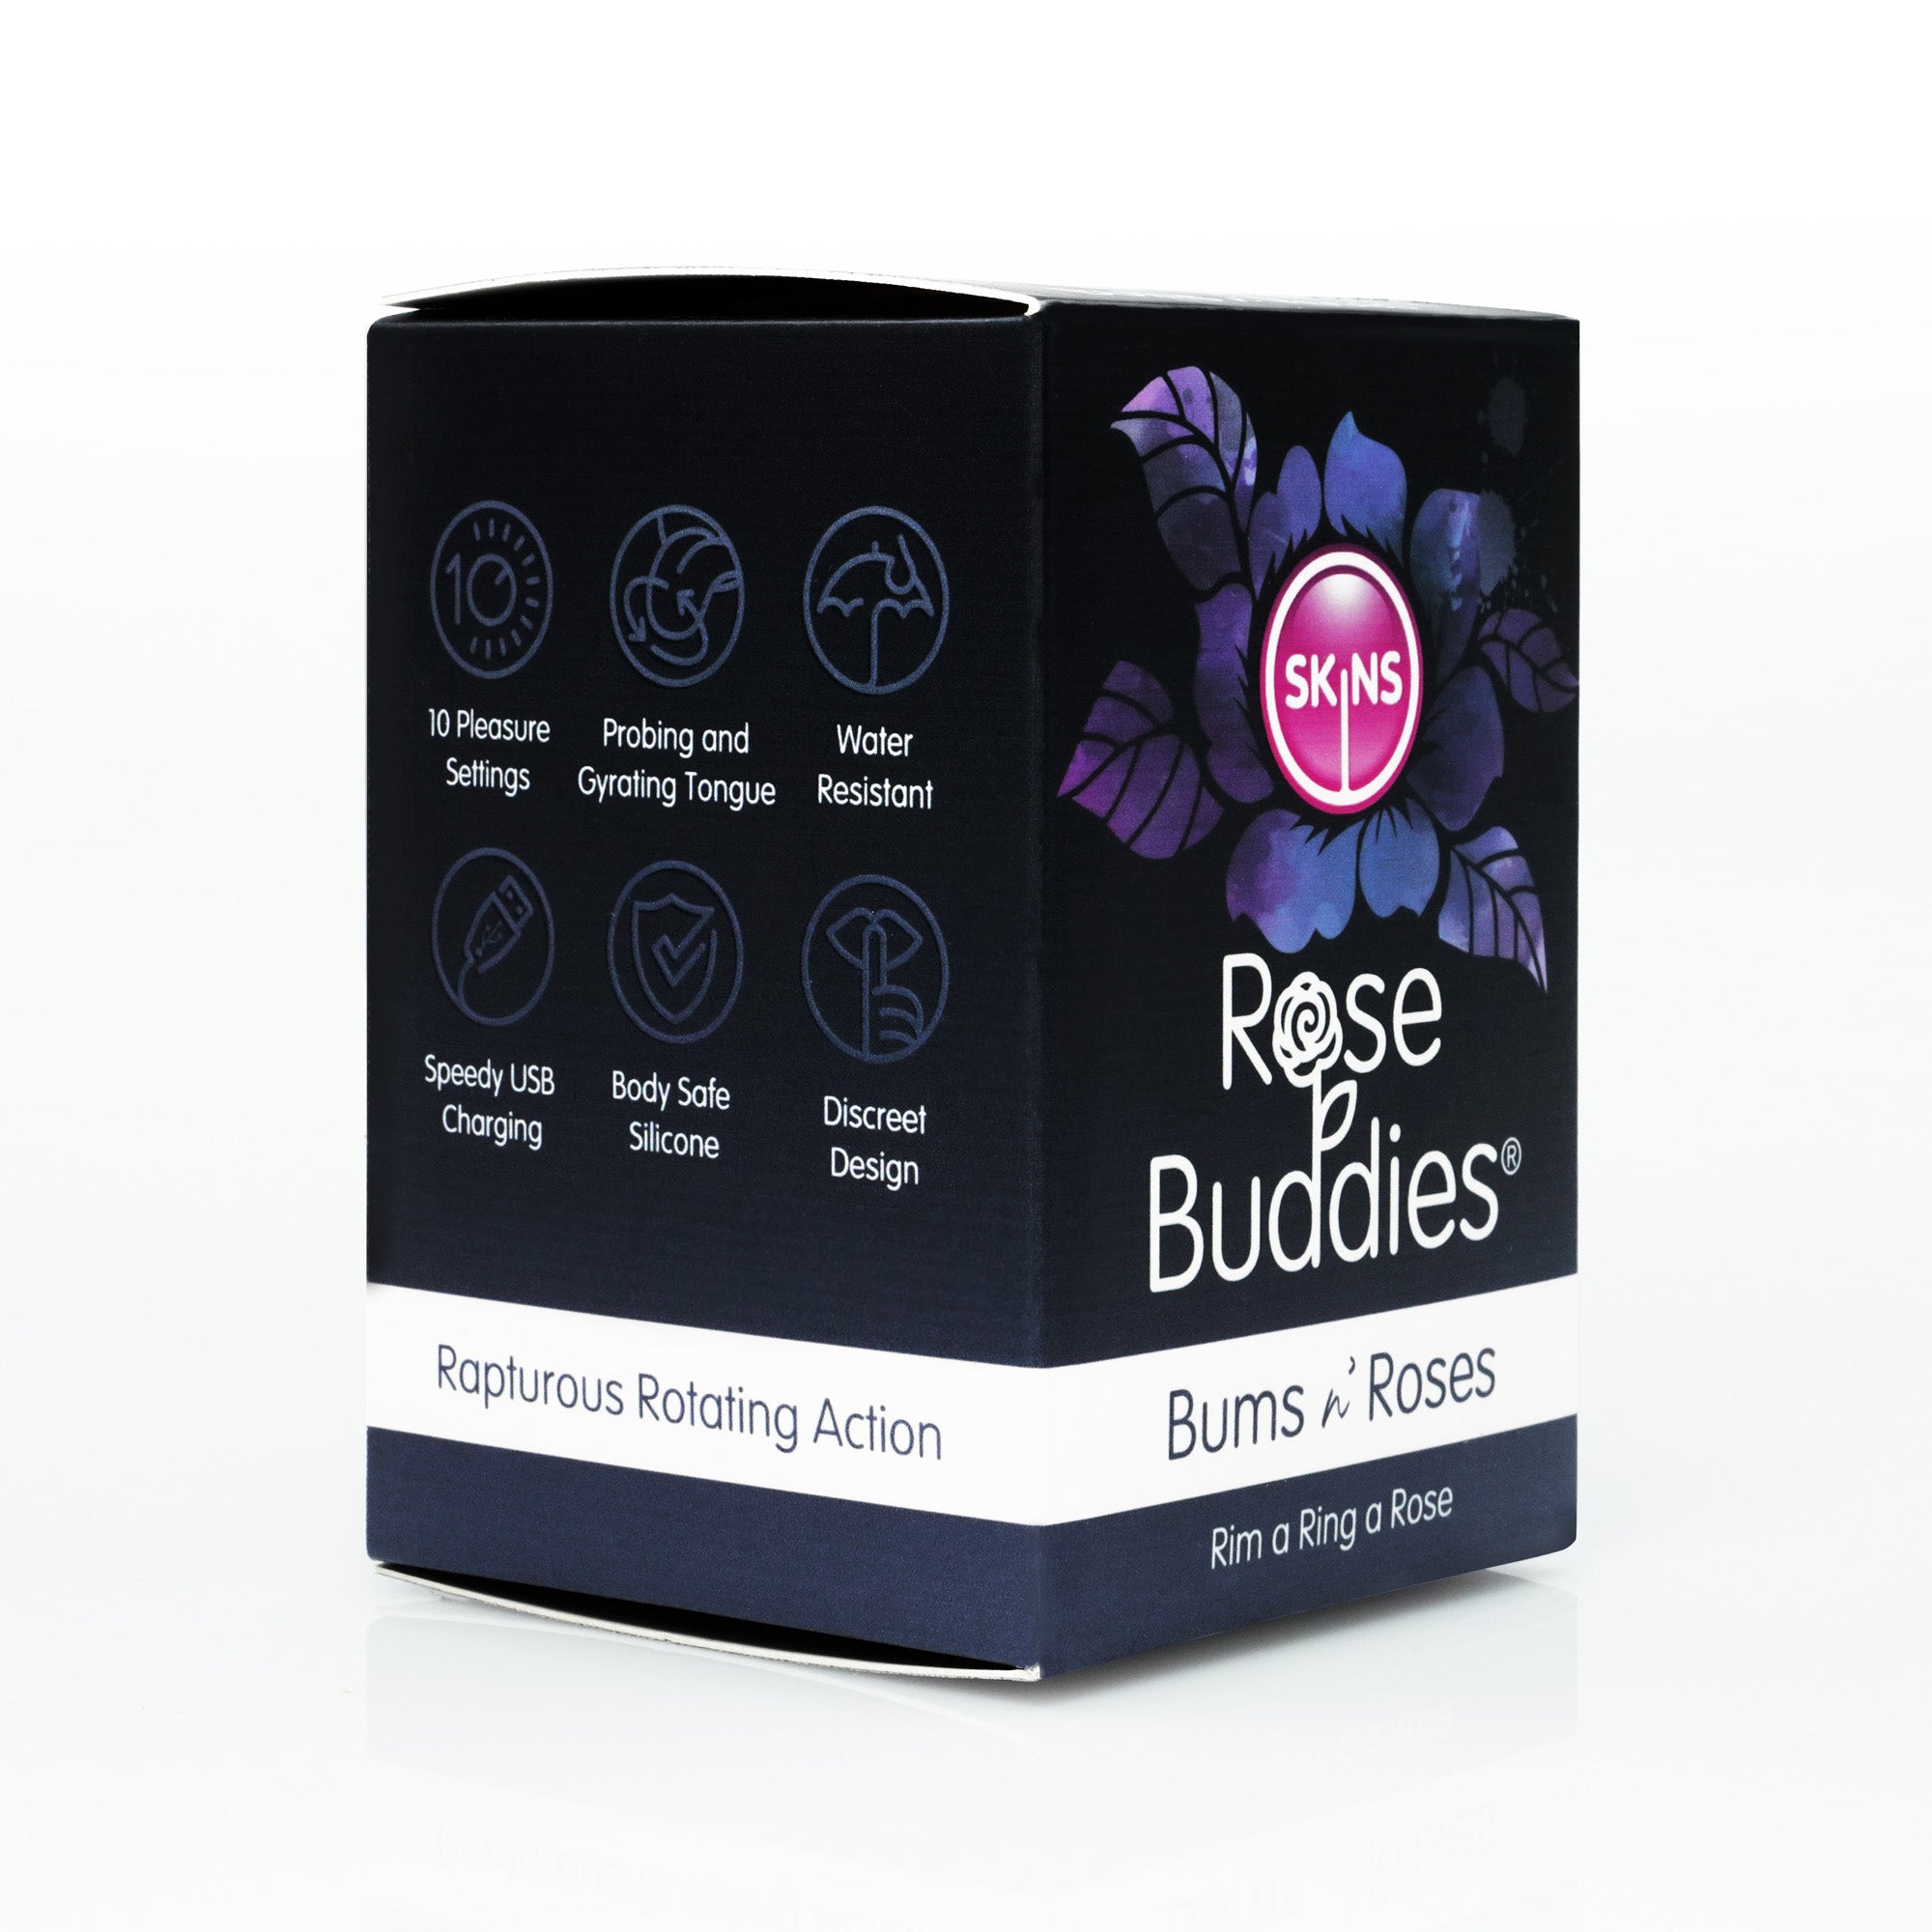 Rose Buddies Bums N Roses